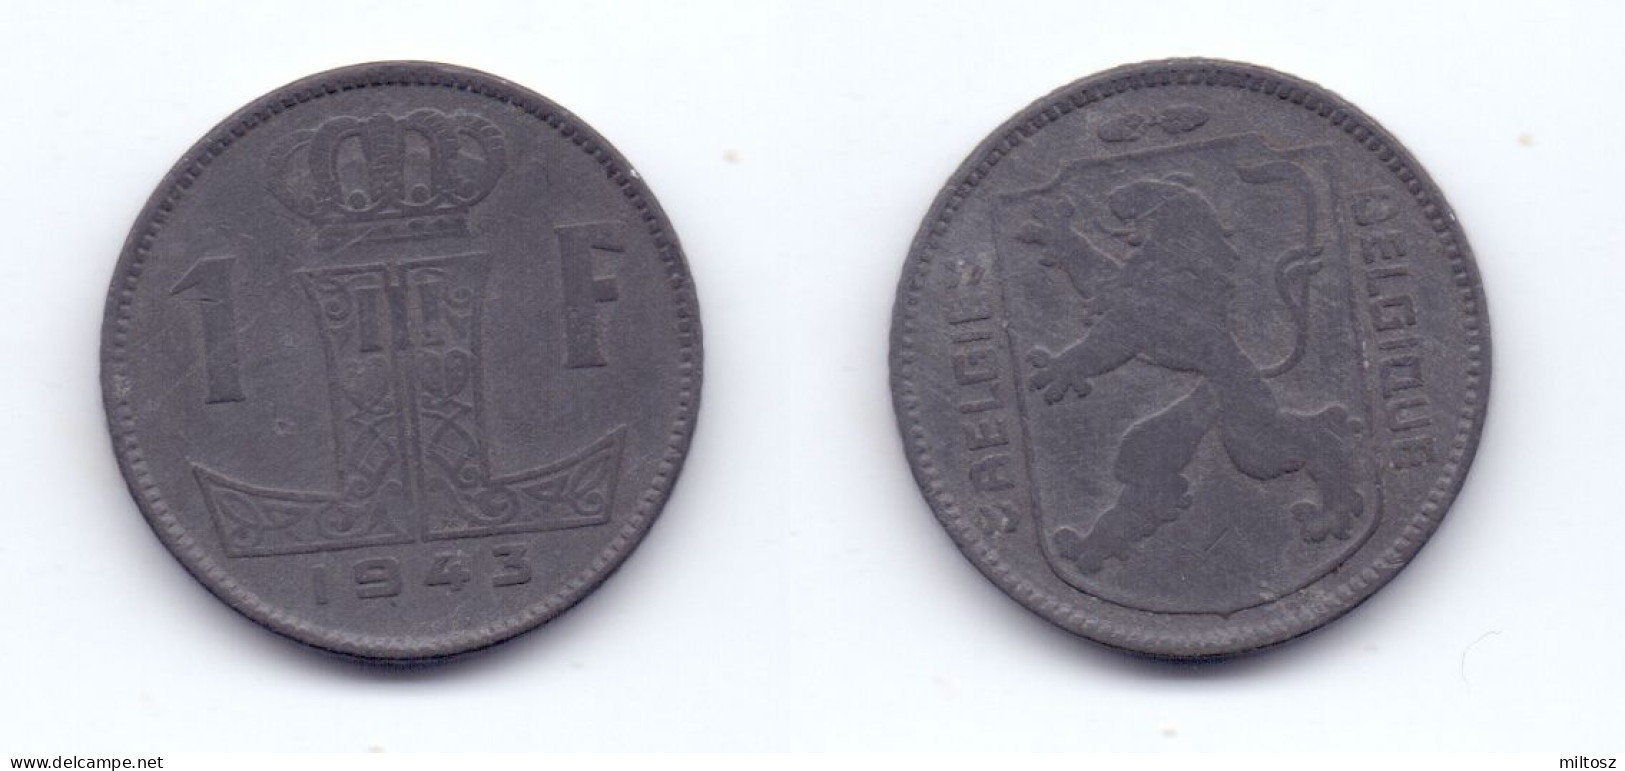 Belgium 1 Franc 1943 WWII Issue BELGIE-BELGIQUE - 1 Franc